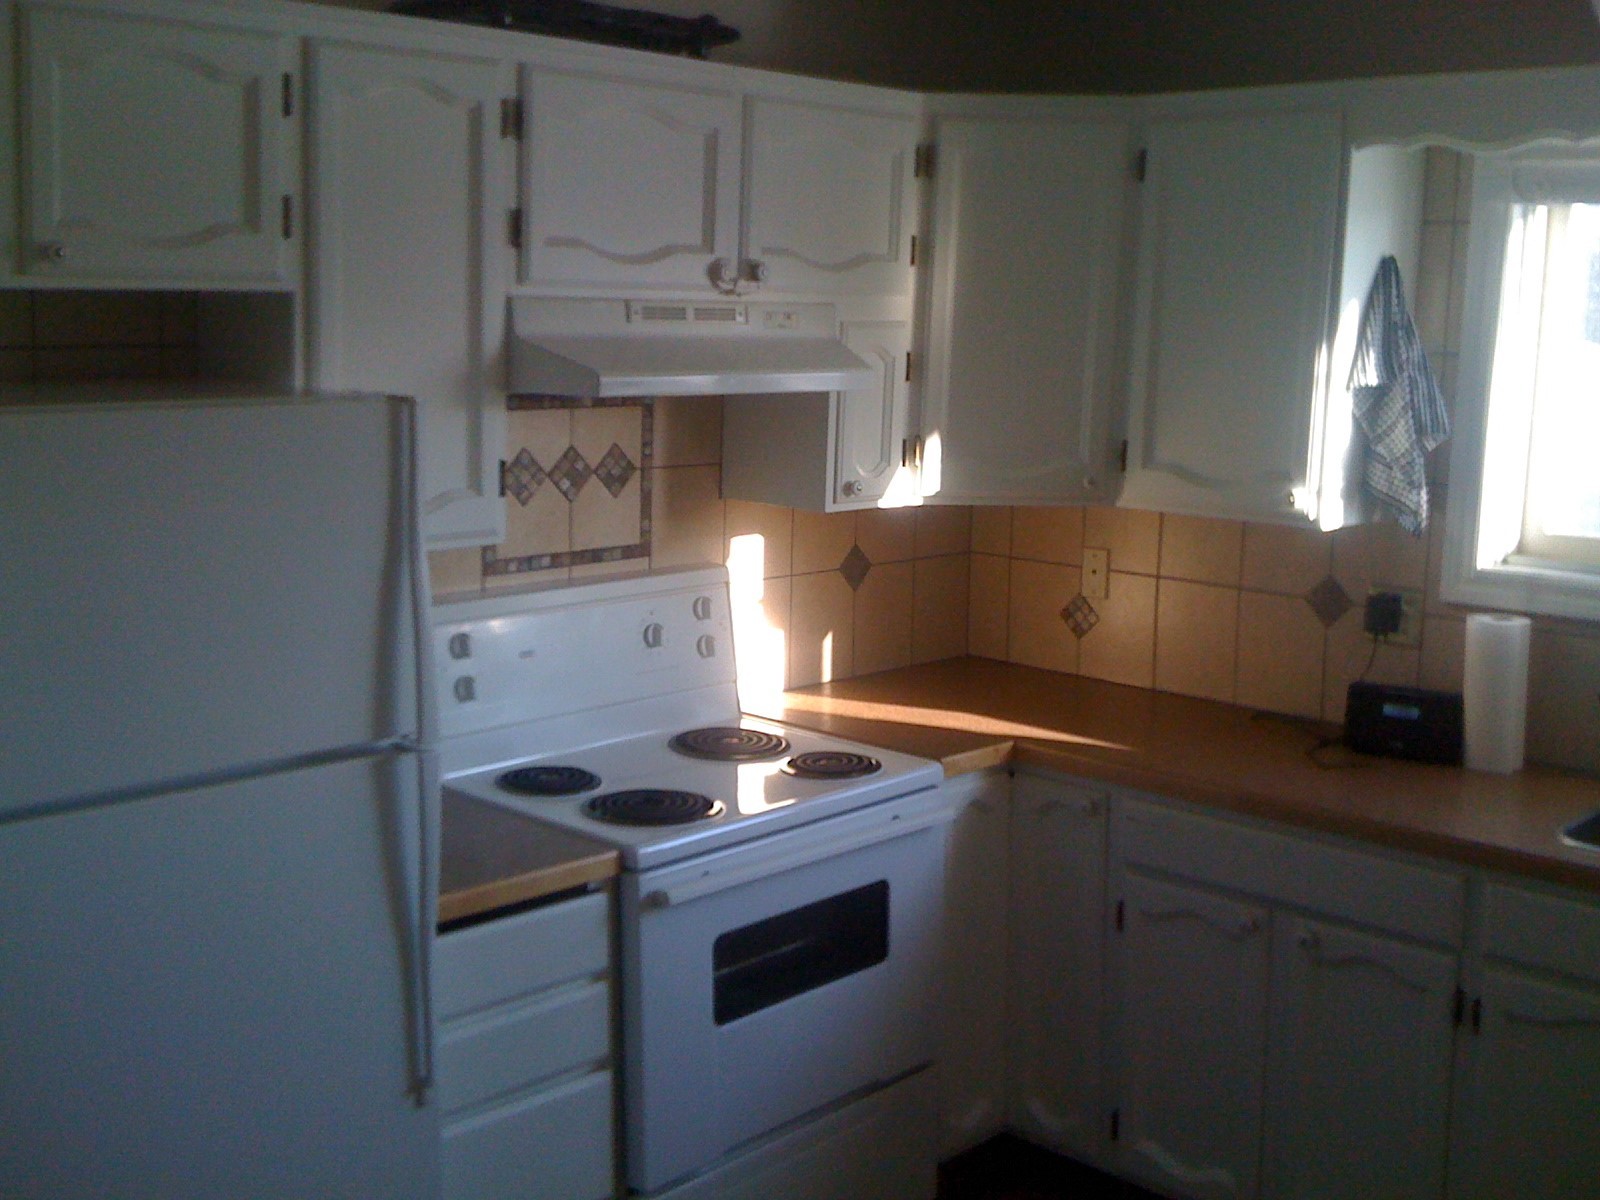 Kitchen-Appliances-4110-Upper